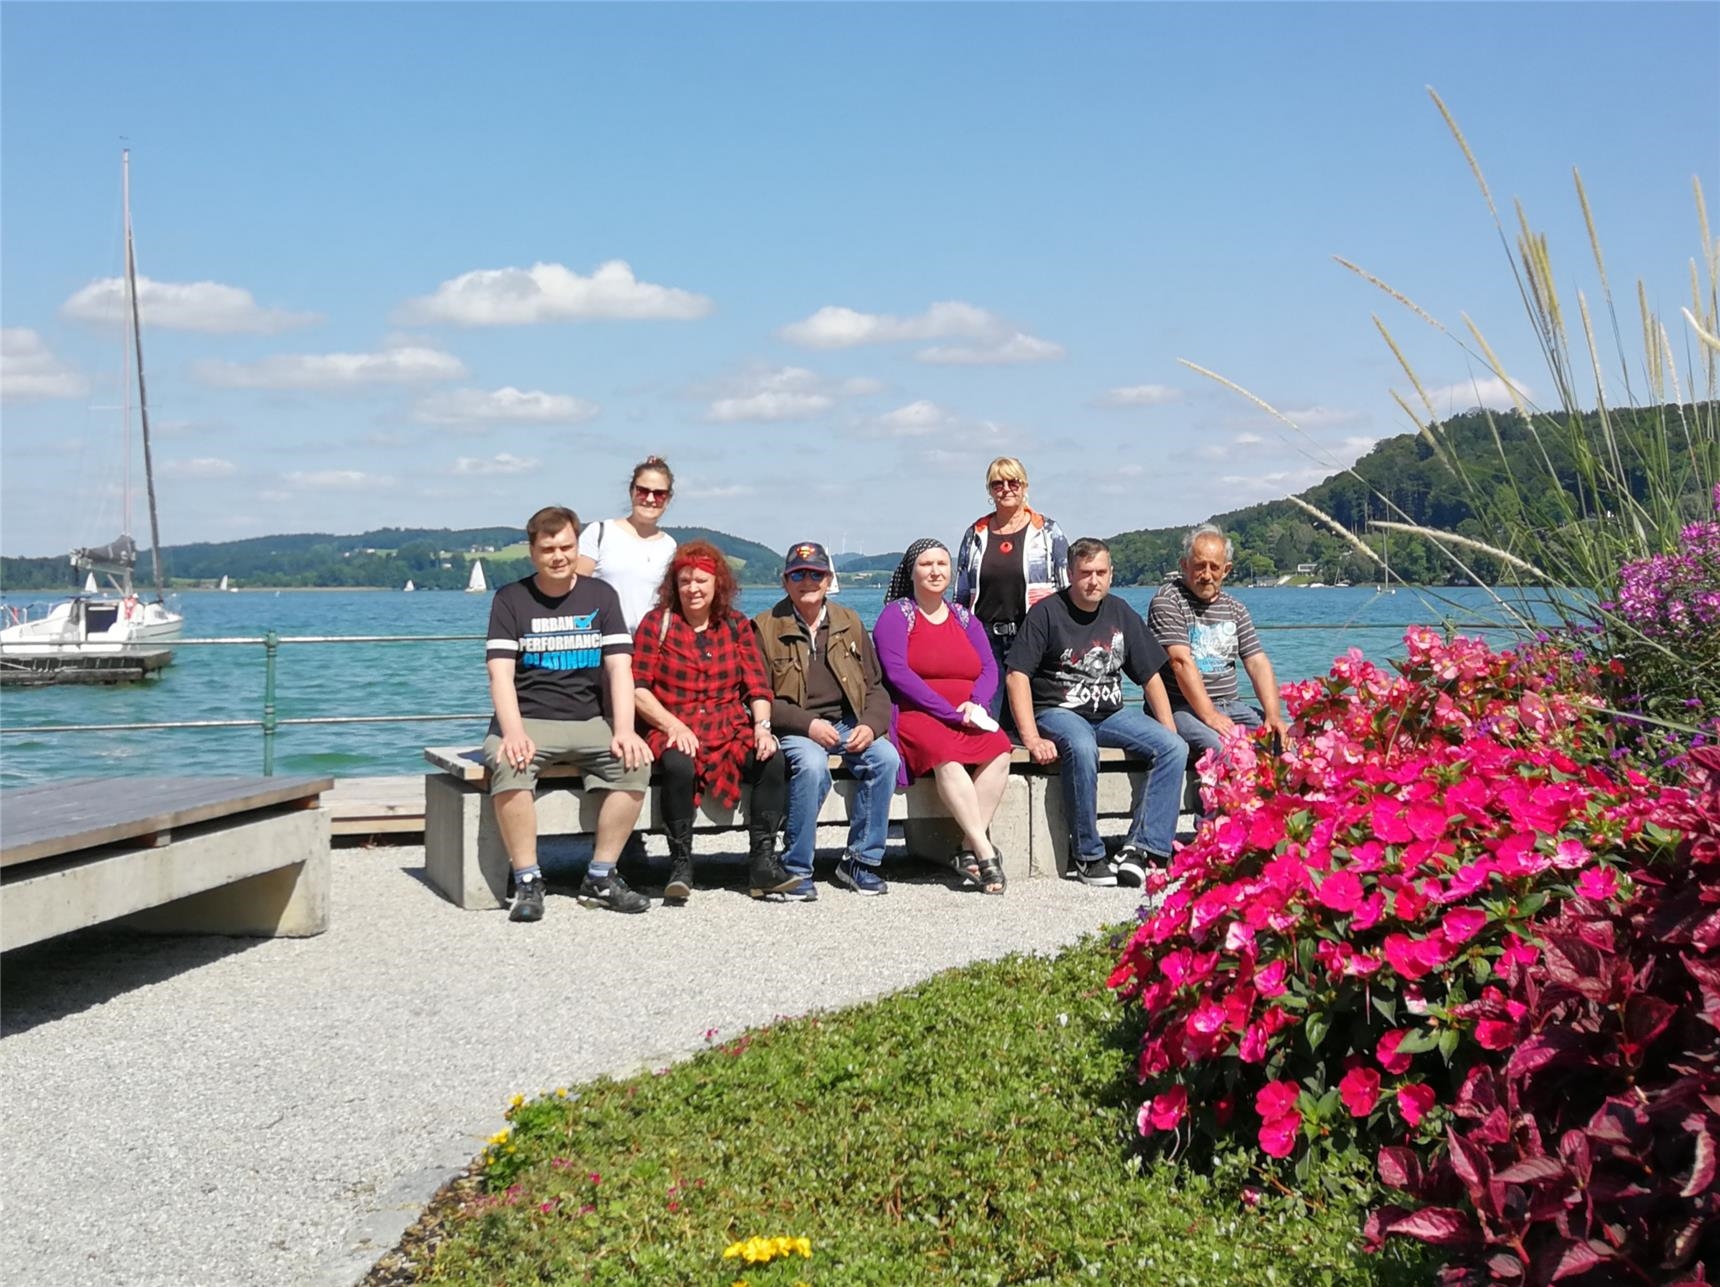 Waren begeistert von Ausflug zum Mattsee: die Klientinnen und Klienten der therapeutischen Wohngemeinschaft des Kreis-Caritasverband Rottal-Inn e. V. und ihre Betreuerinnen 